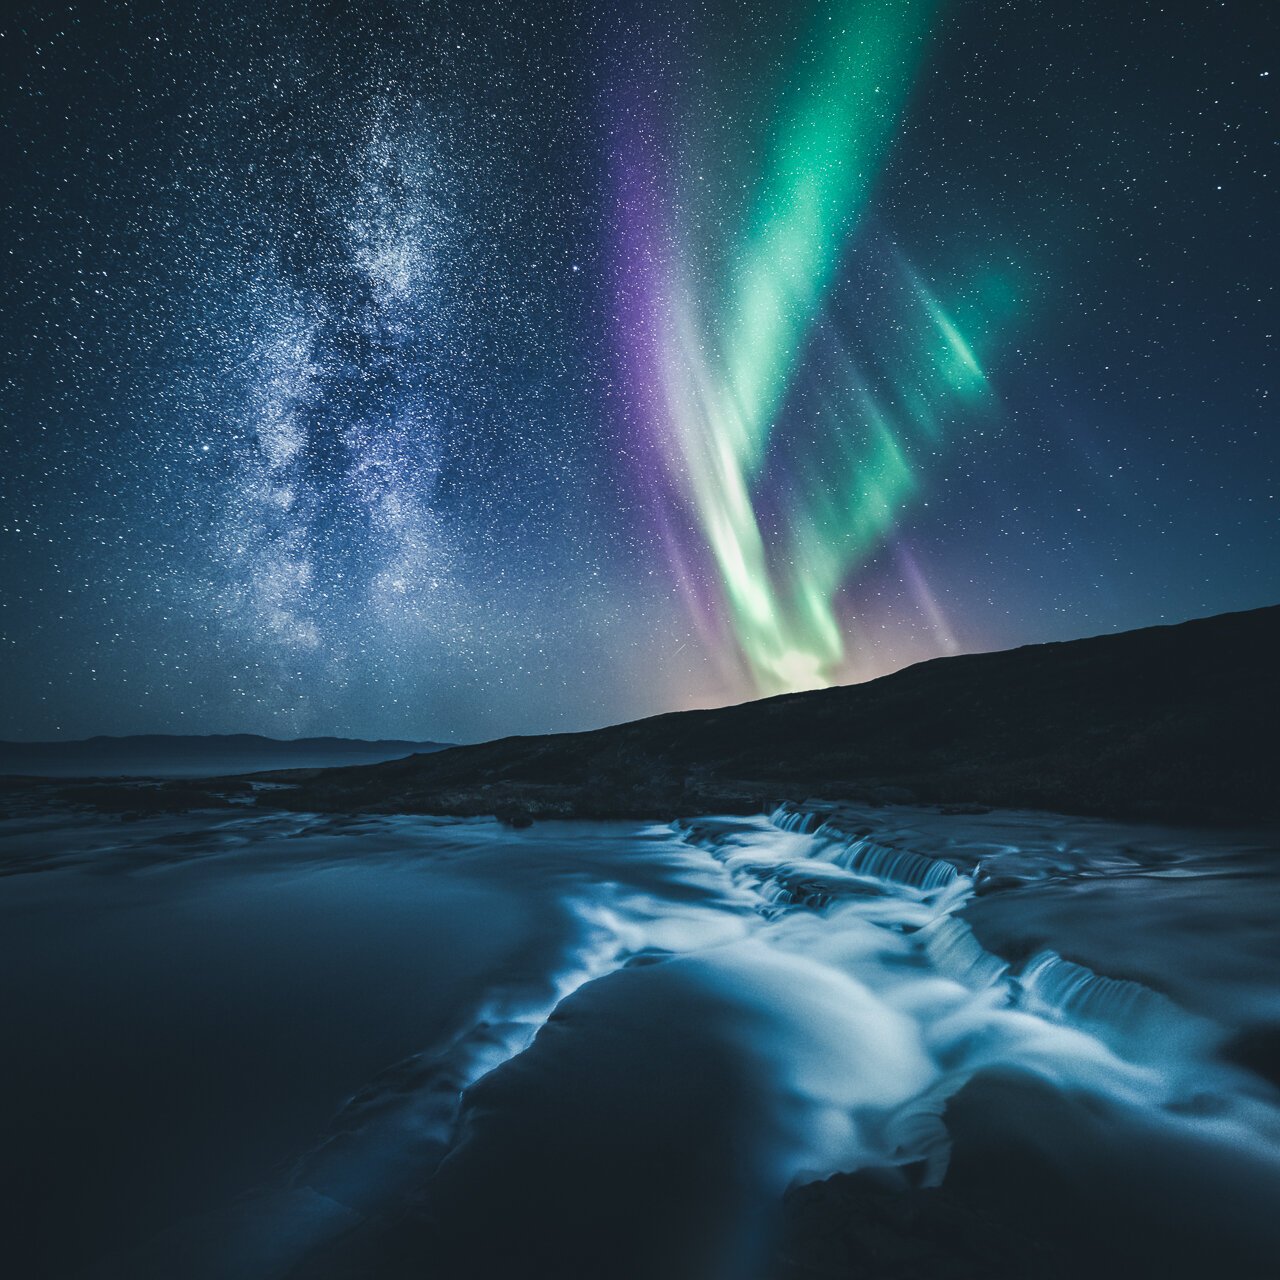 Mikko-Lagerstedt-Milky-Way-Aurora.jpg